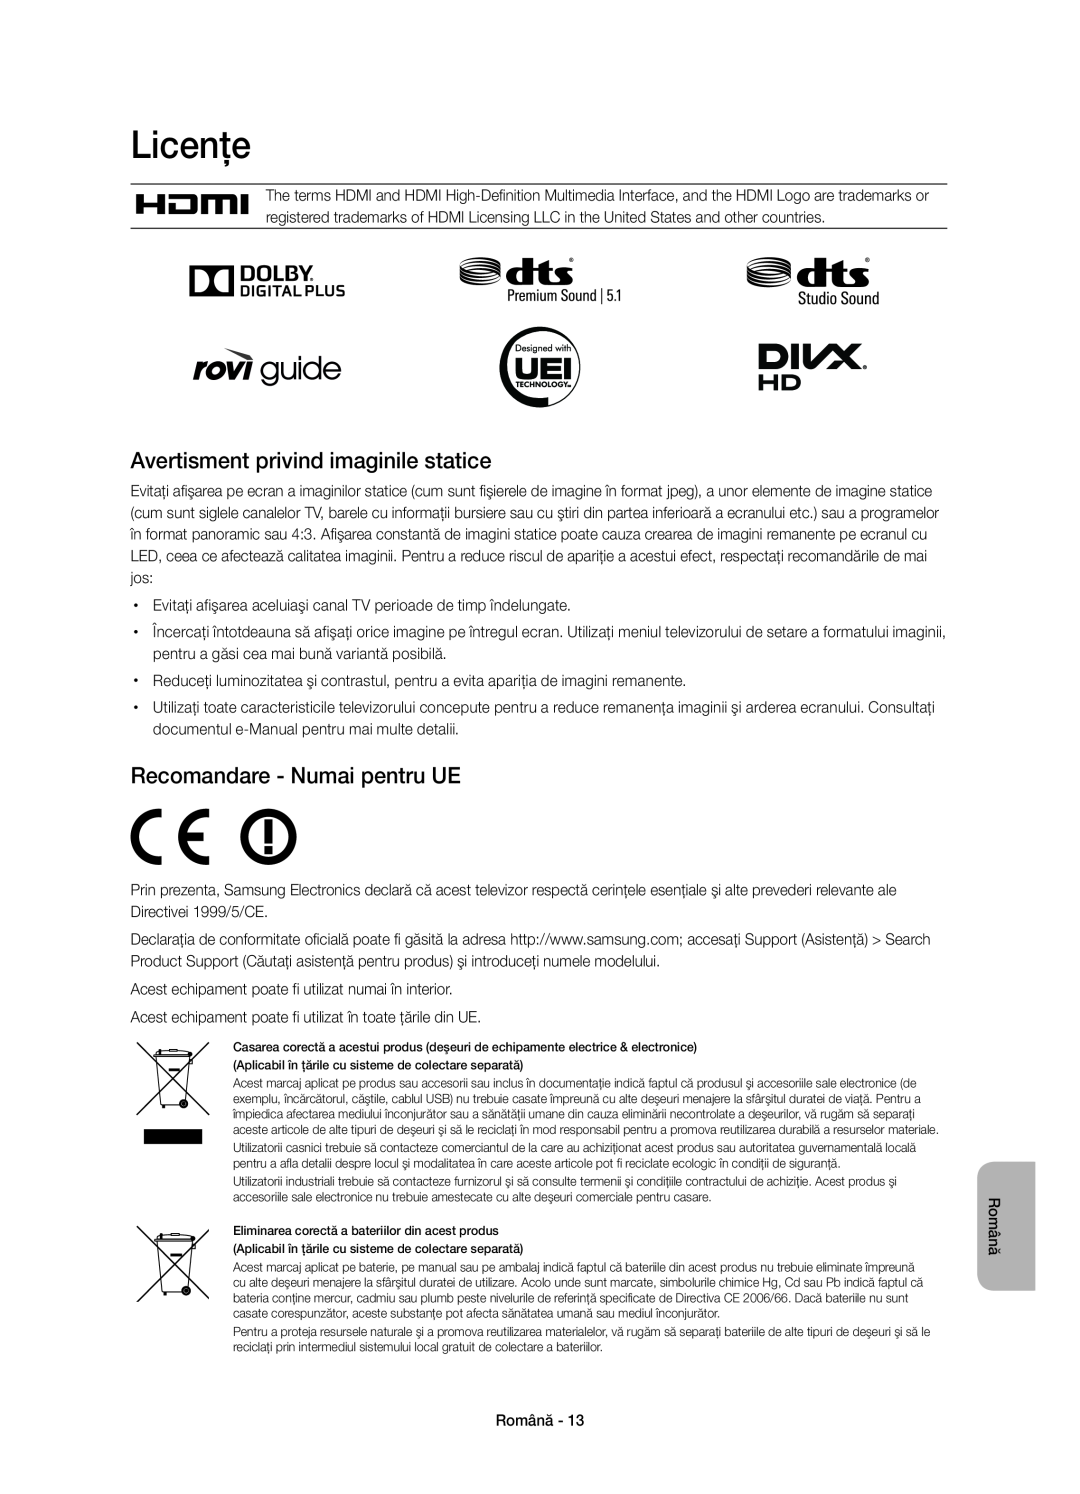 Samsung UE40H6670SLXXN manual Licenţe, Avertisment privind imaginile statice, Recomandare - Numai pentru UE, Română 